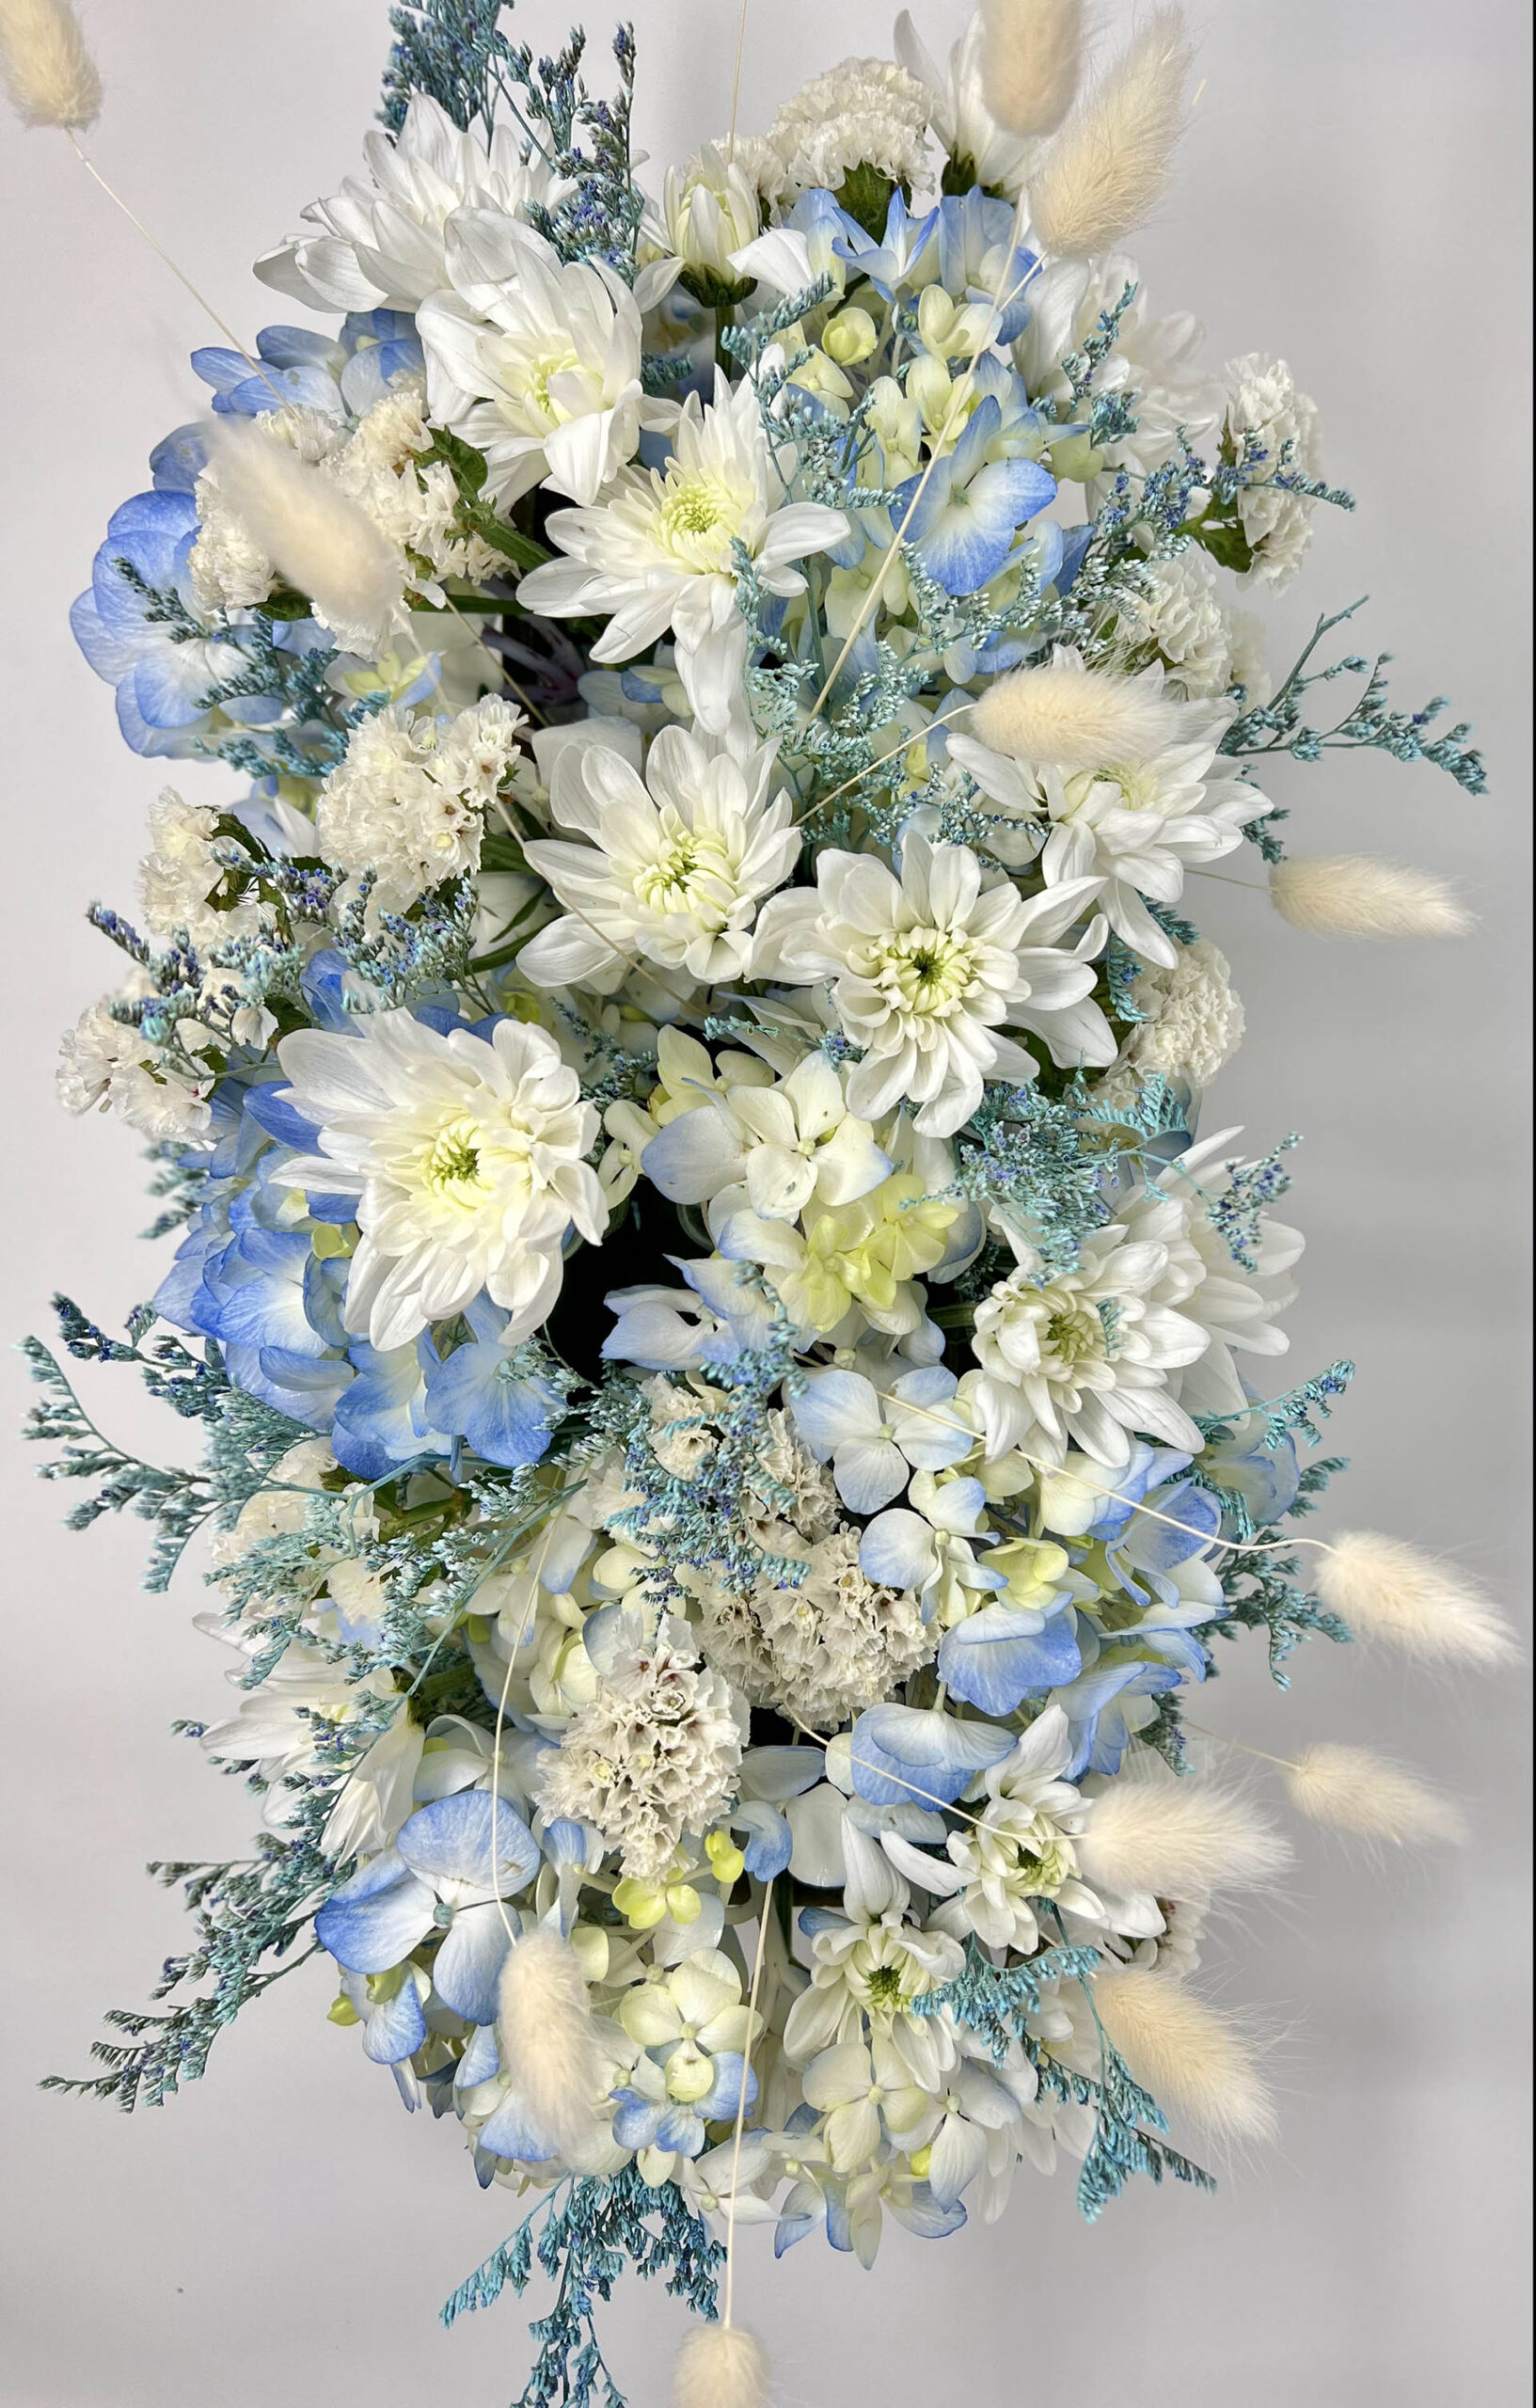 buy Wooden Box Centerpiece Floral Arrangement Vancouver